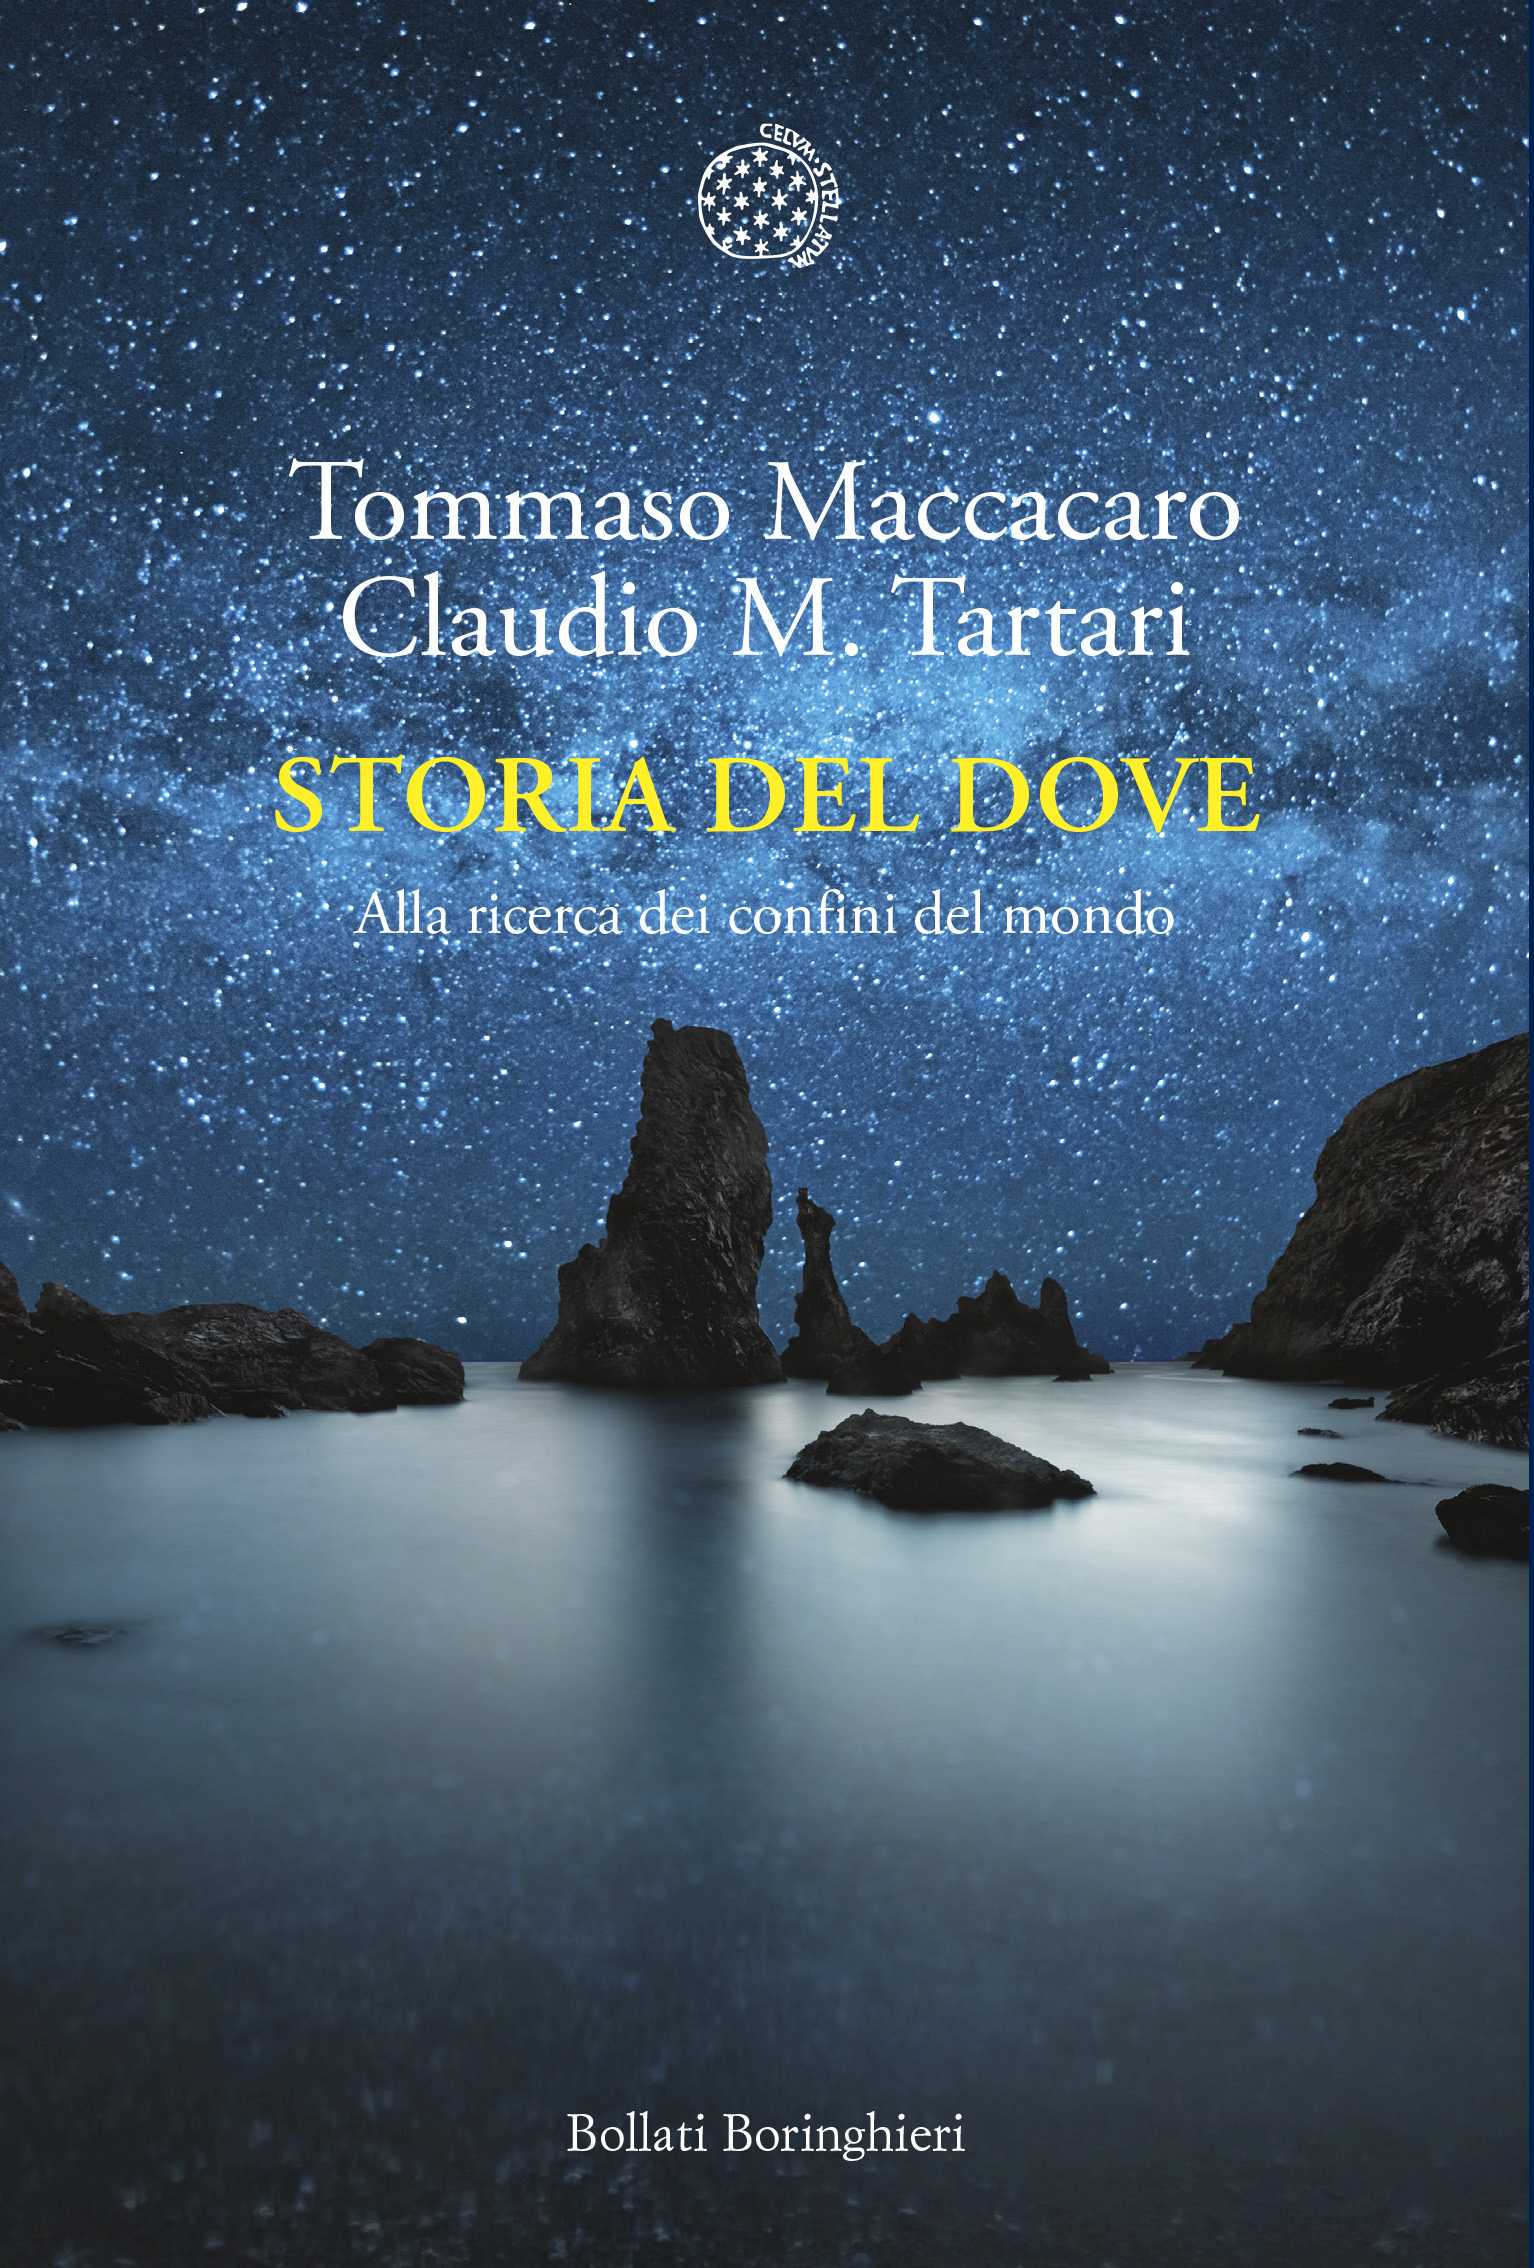 Book launch: “Storia del dove”